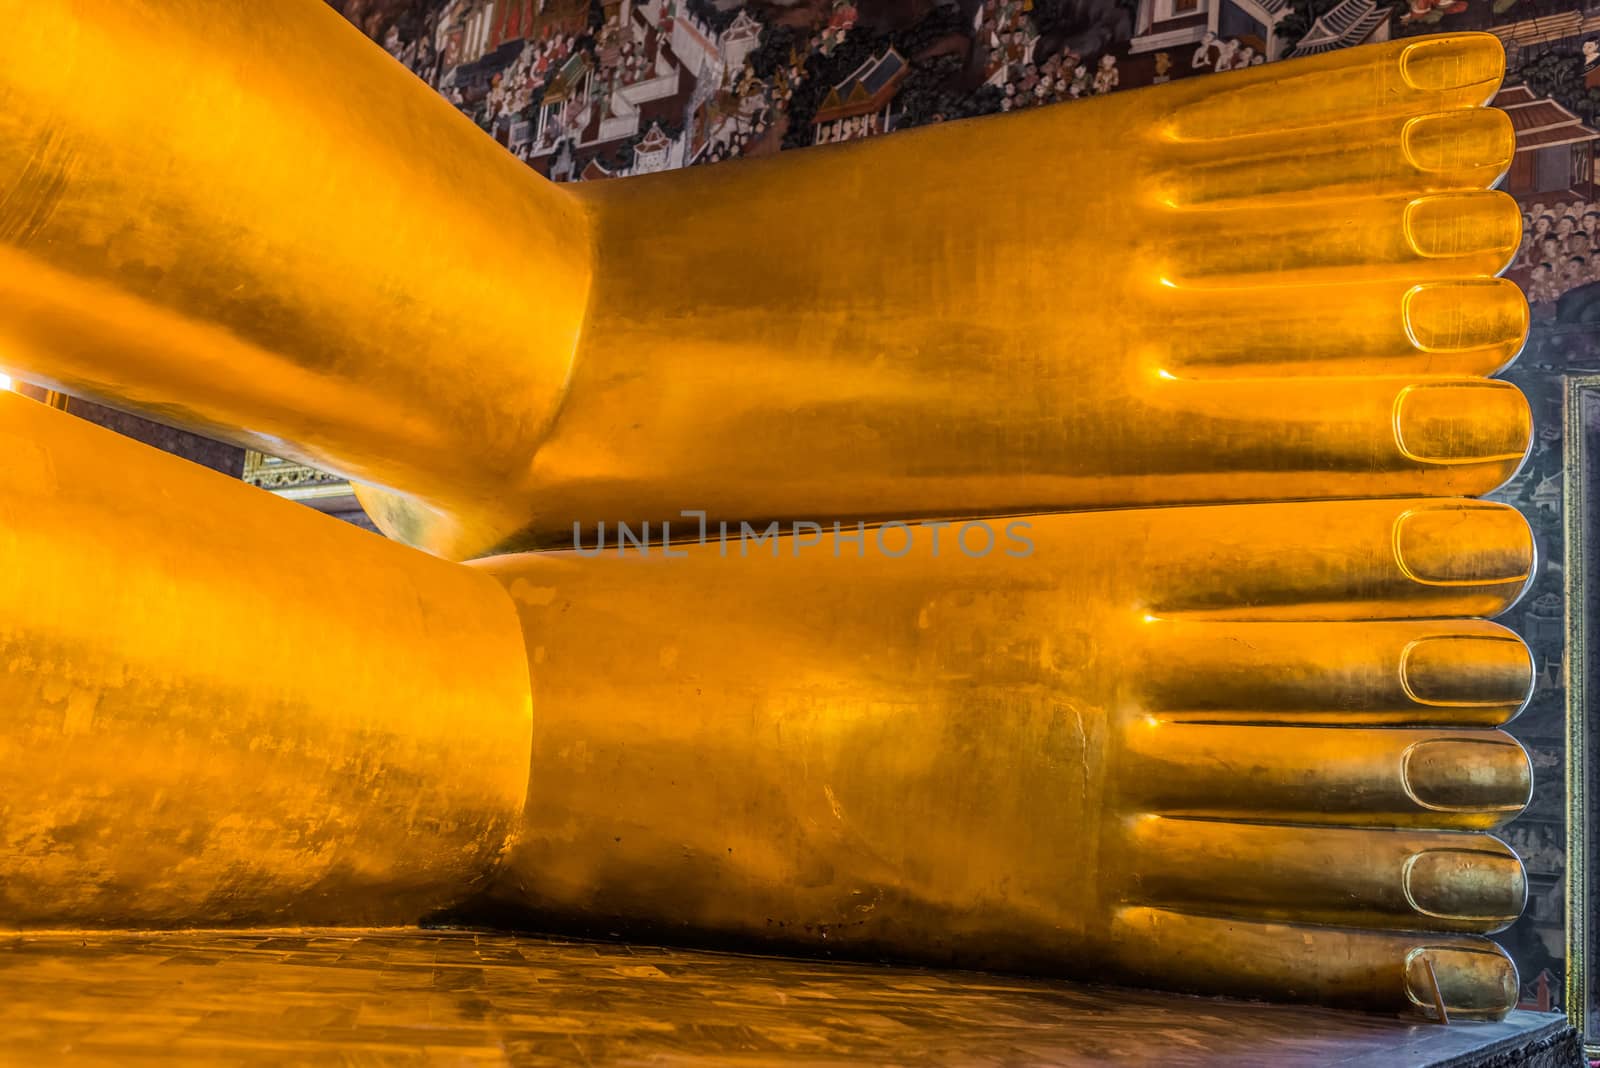 reclining buddha feet at Wat Pho temple Bangkok Thailand